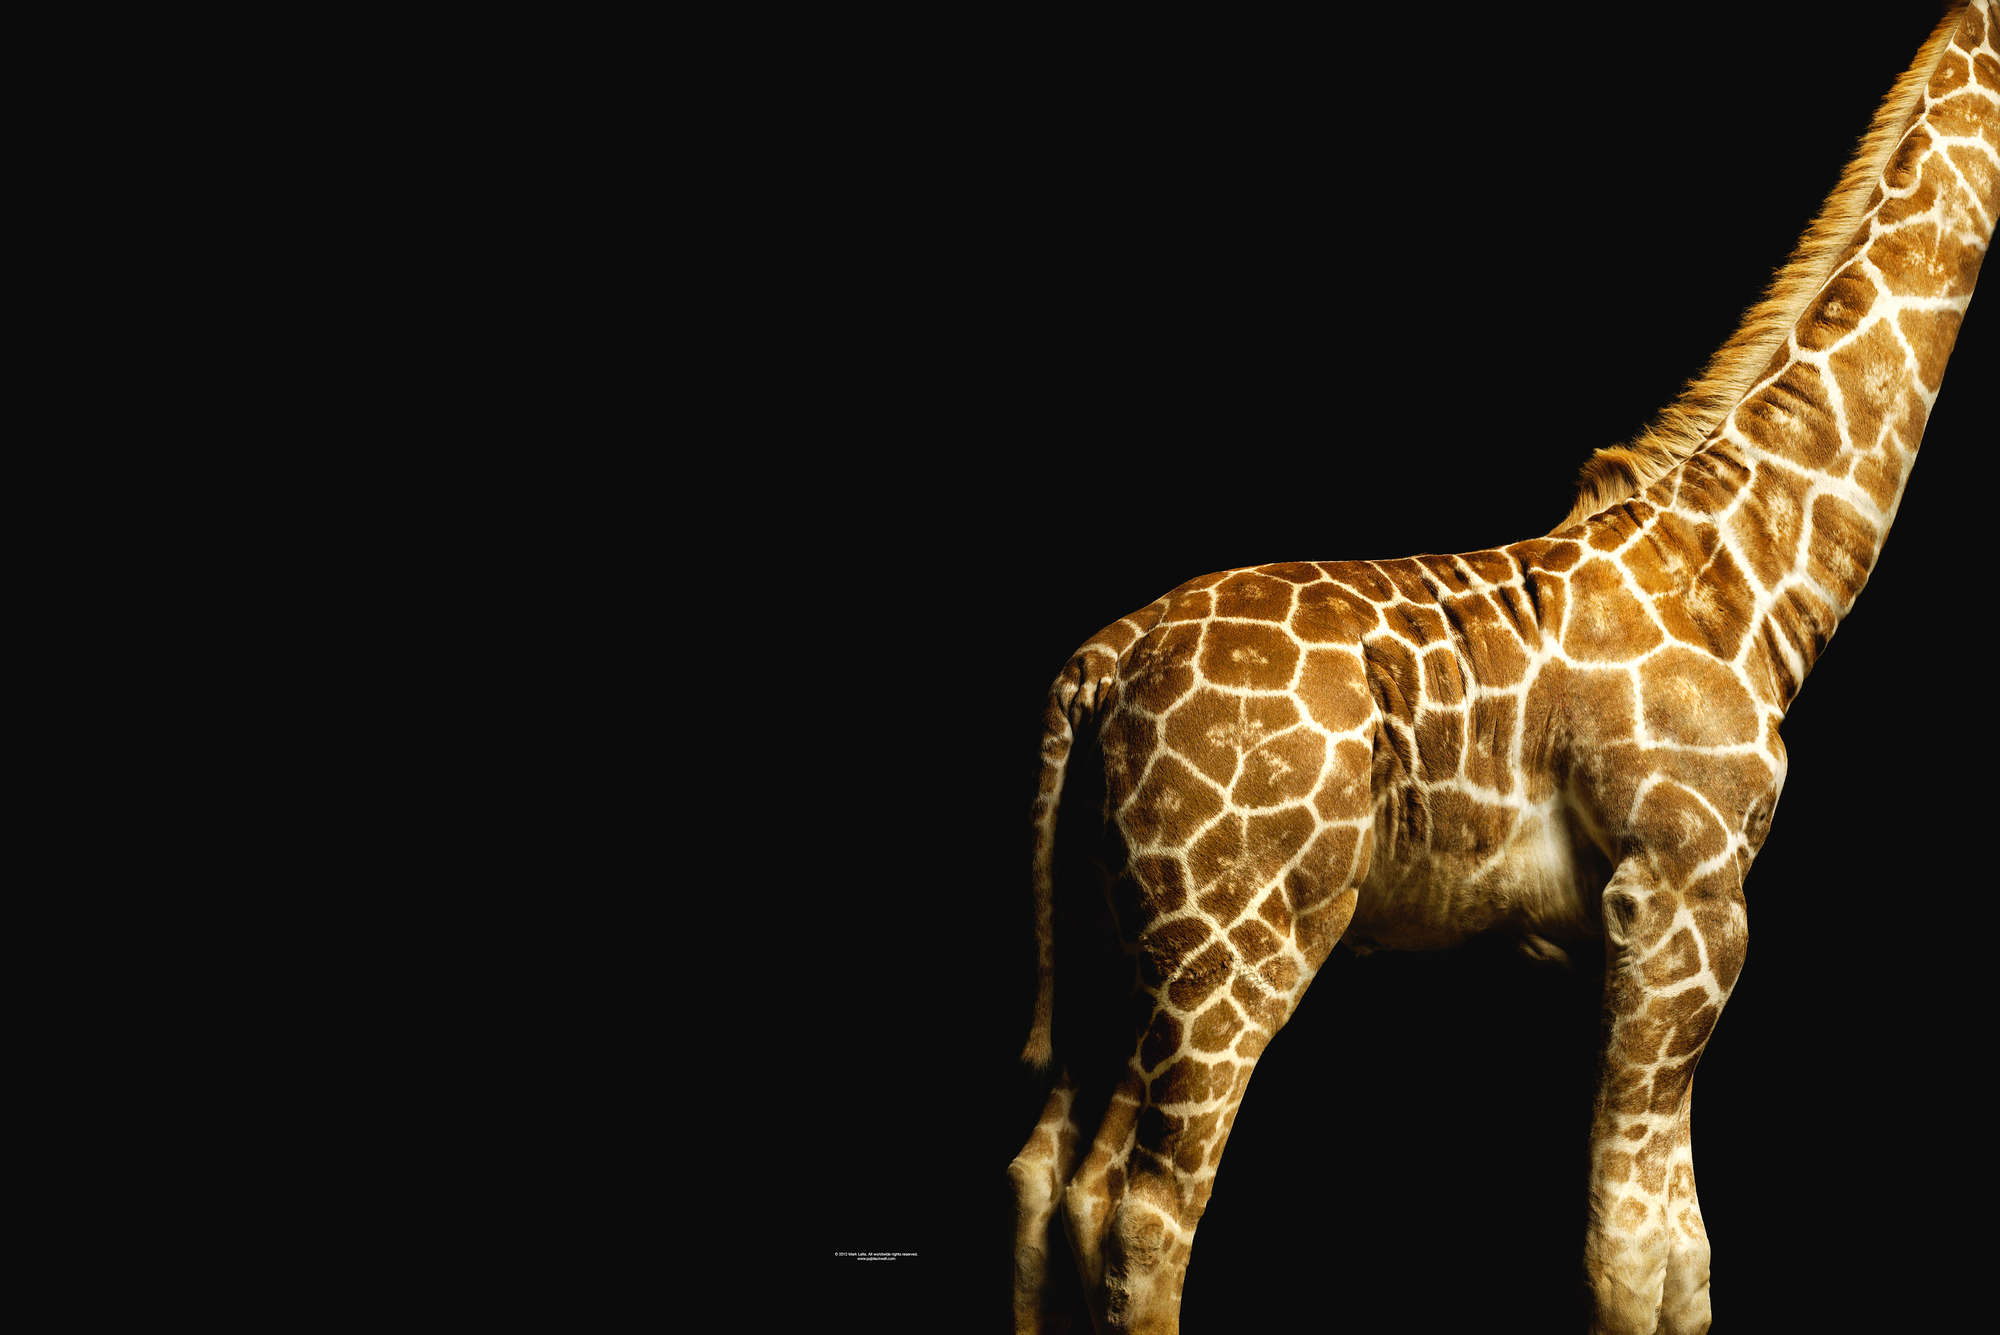             Giraffe Lichaam - Dierenportret Behang
        